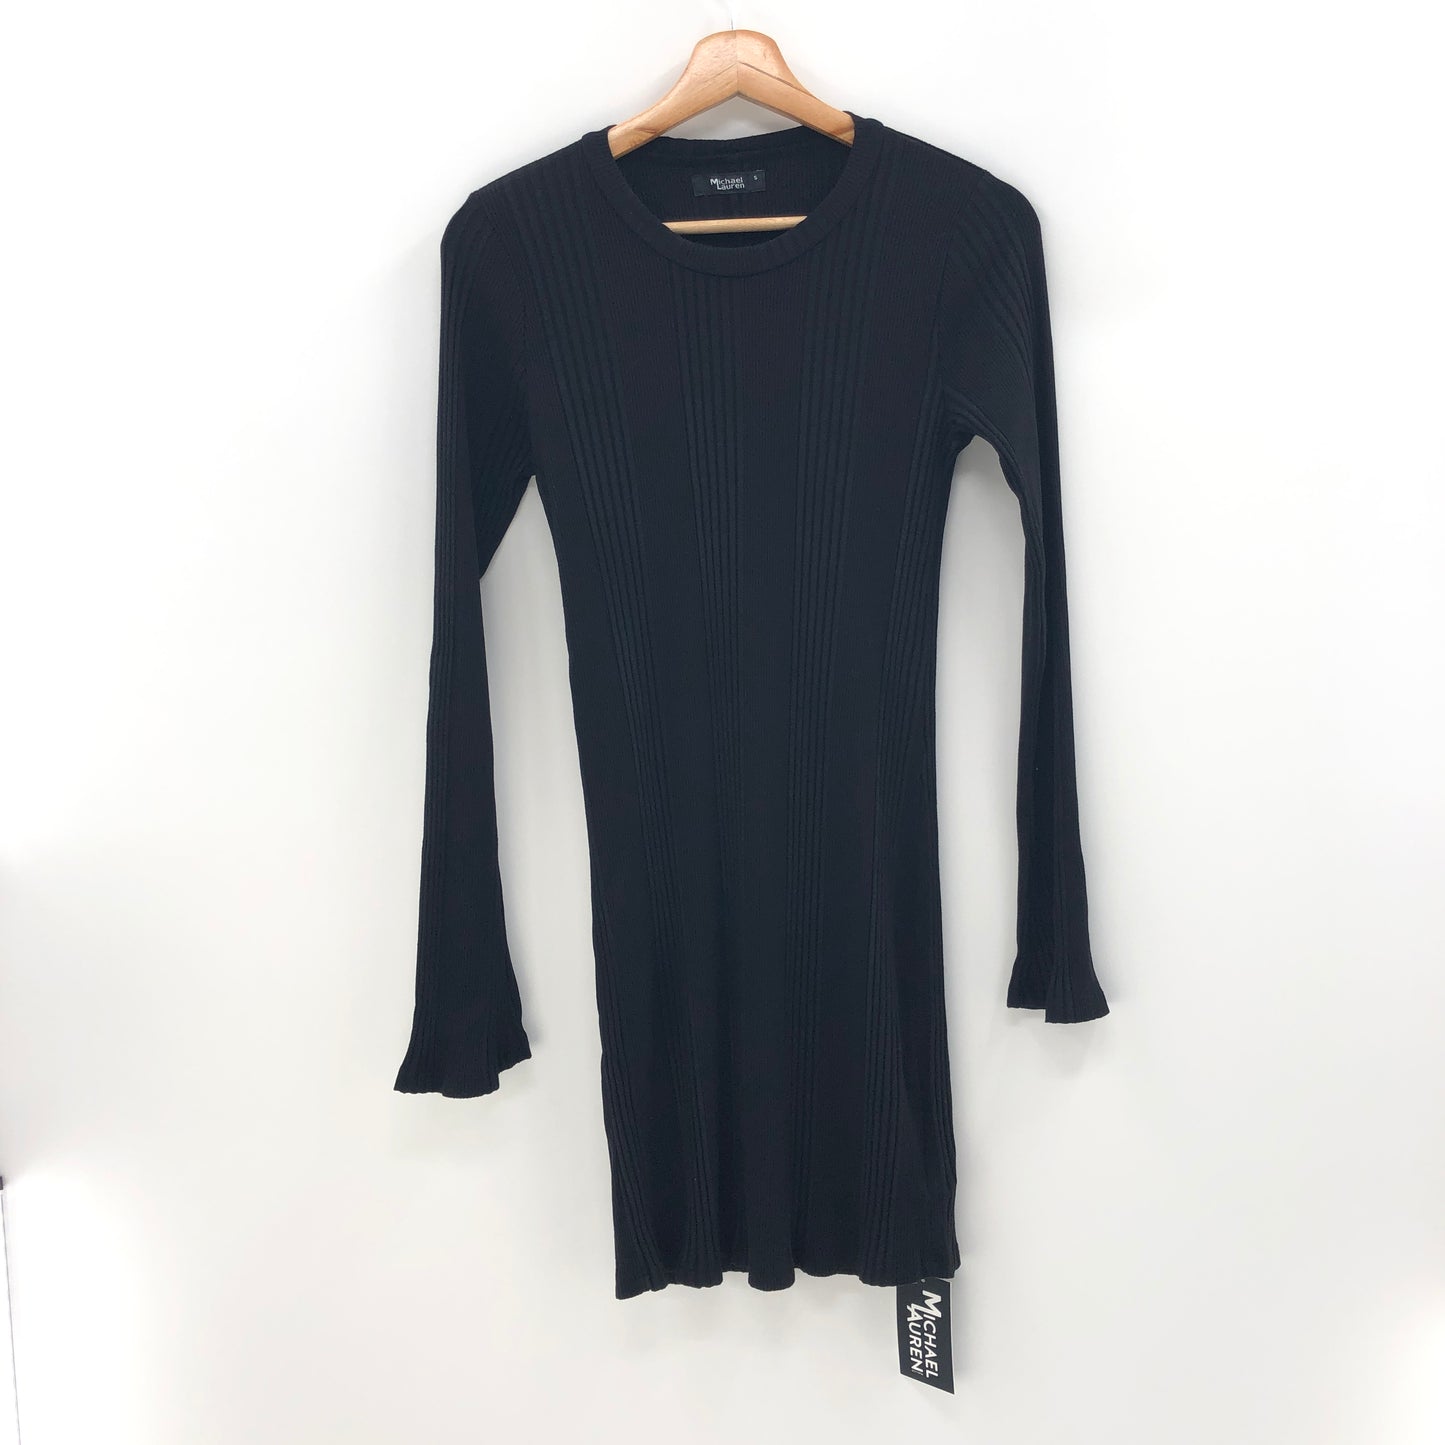 Michael Lauren Jovan Mini Dress in Black